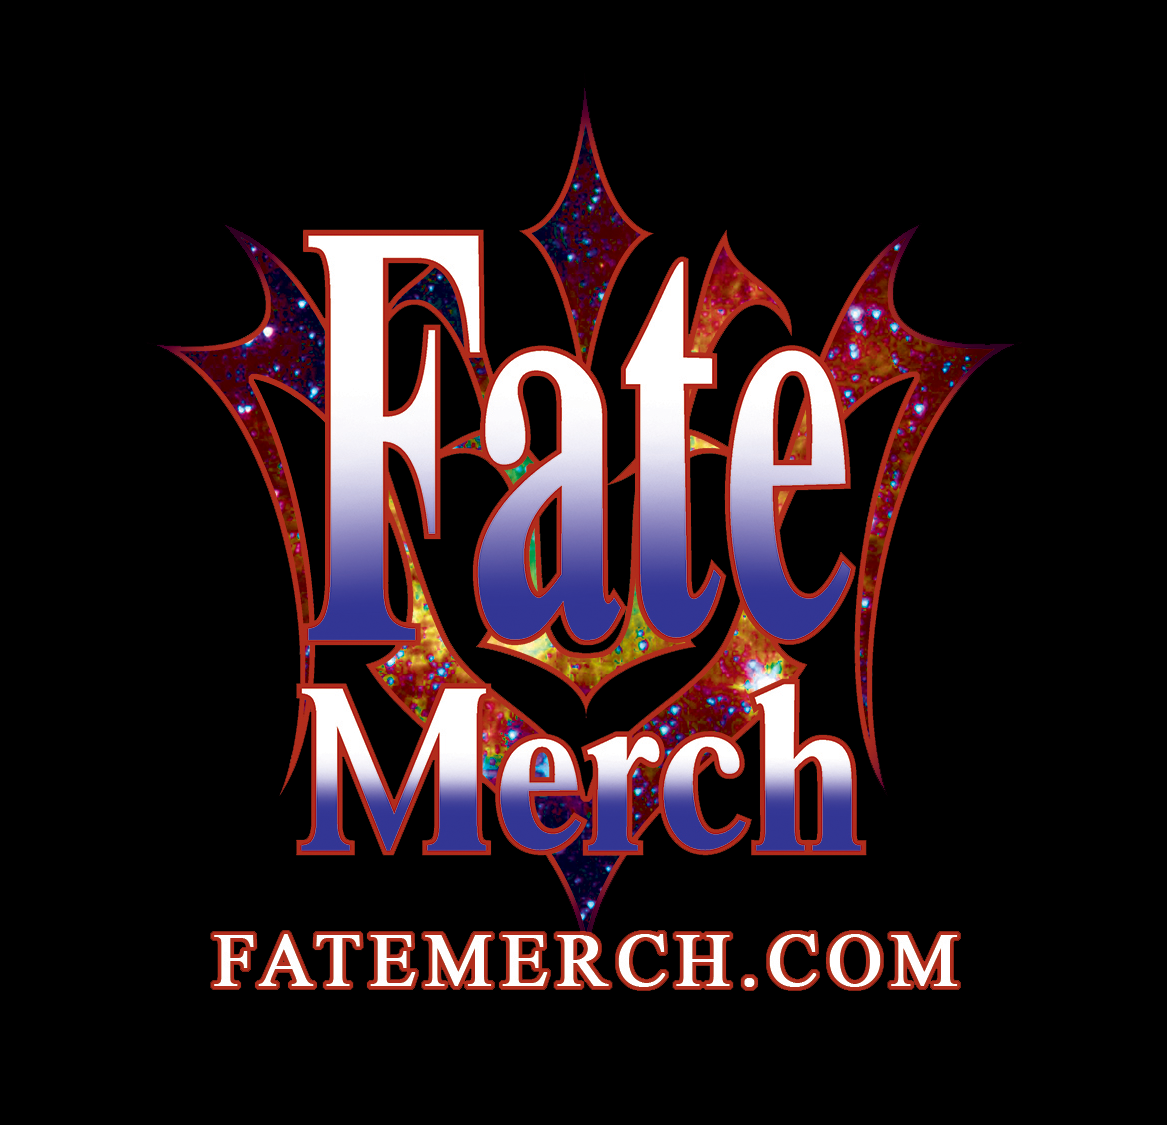 fatemerch.com